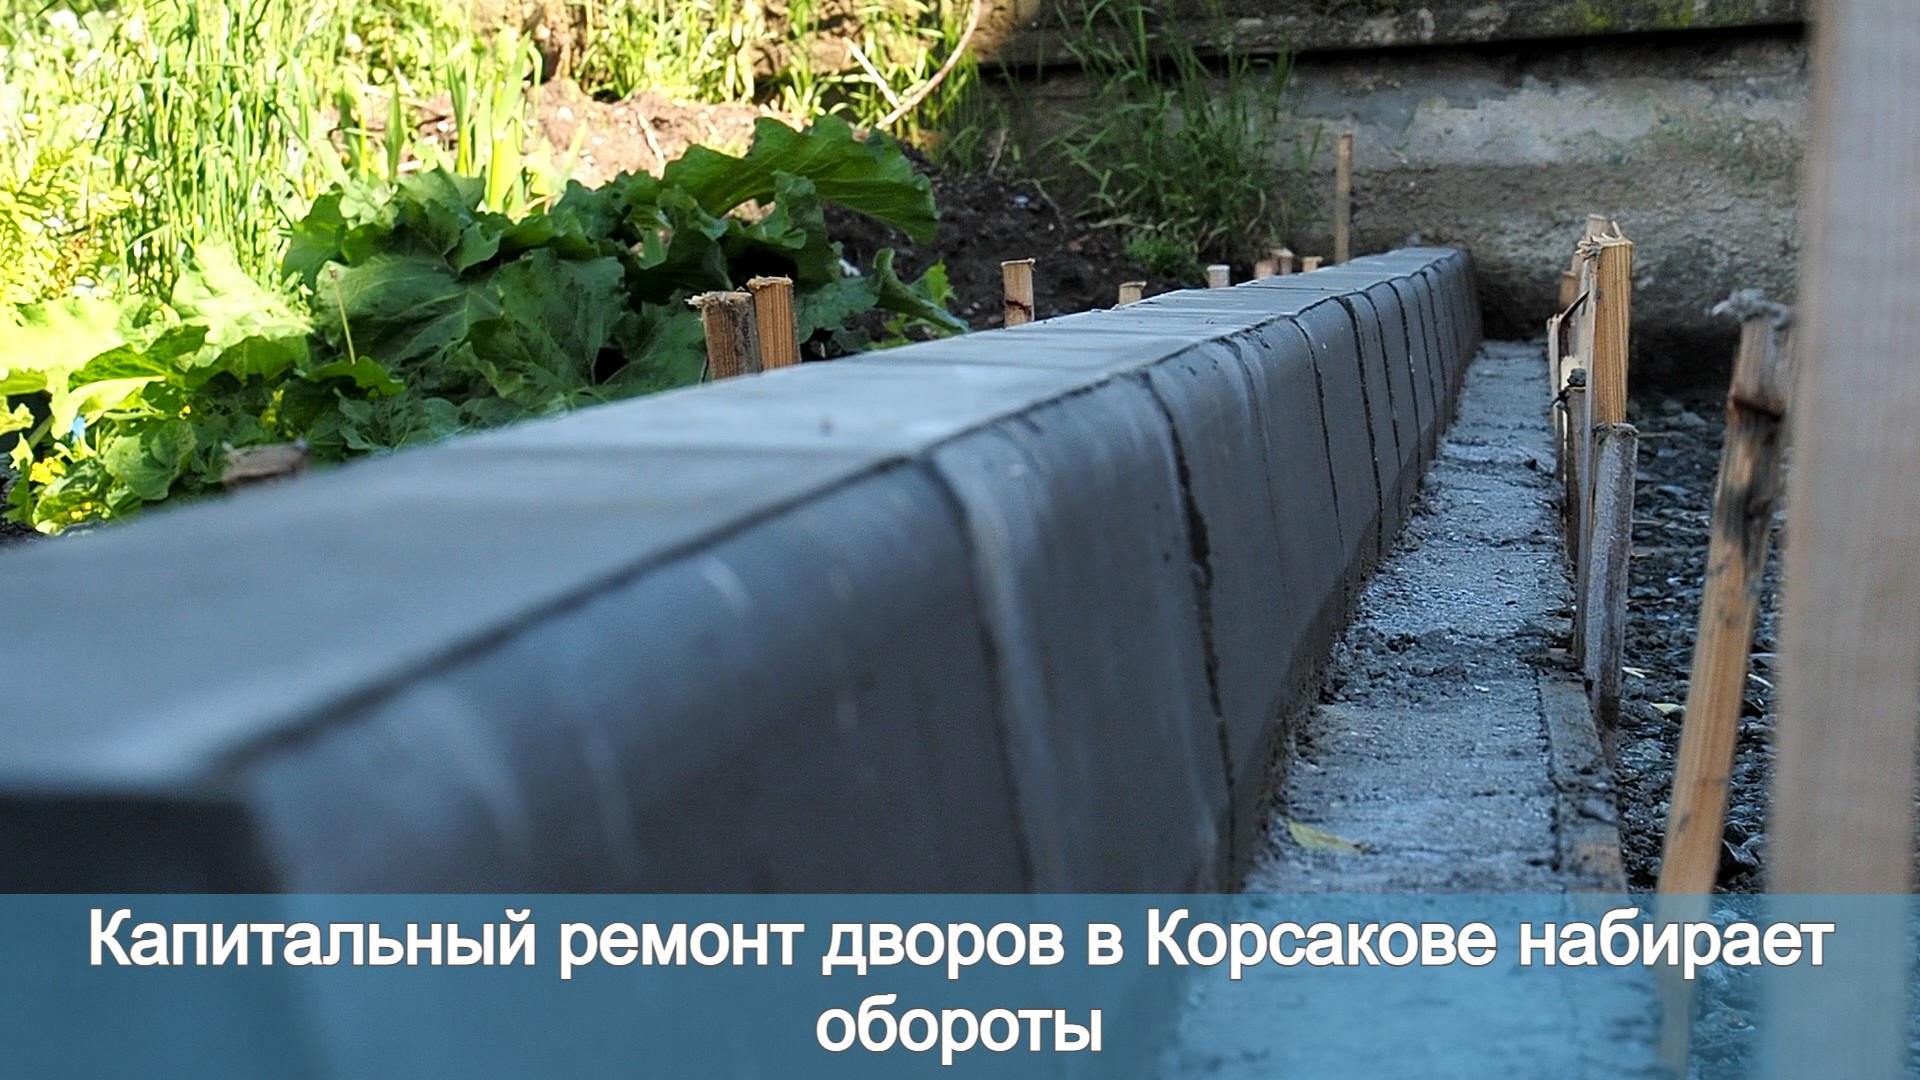 Капитальный ремонт дворов в Корсакове набирает обороты